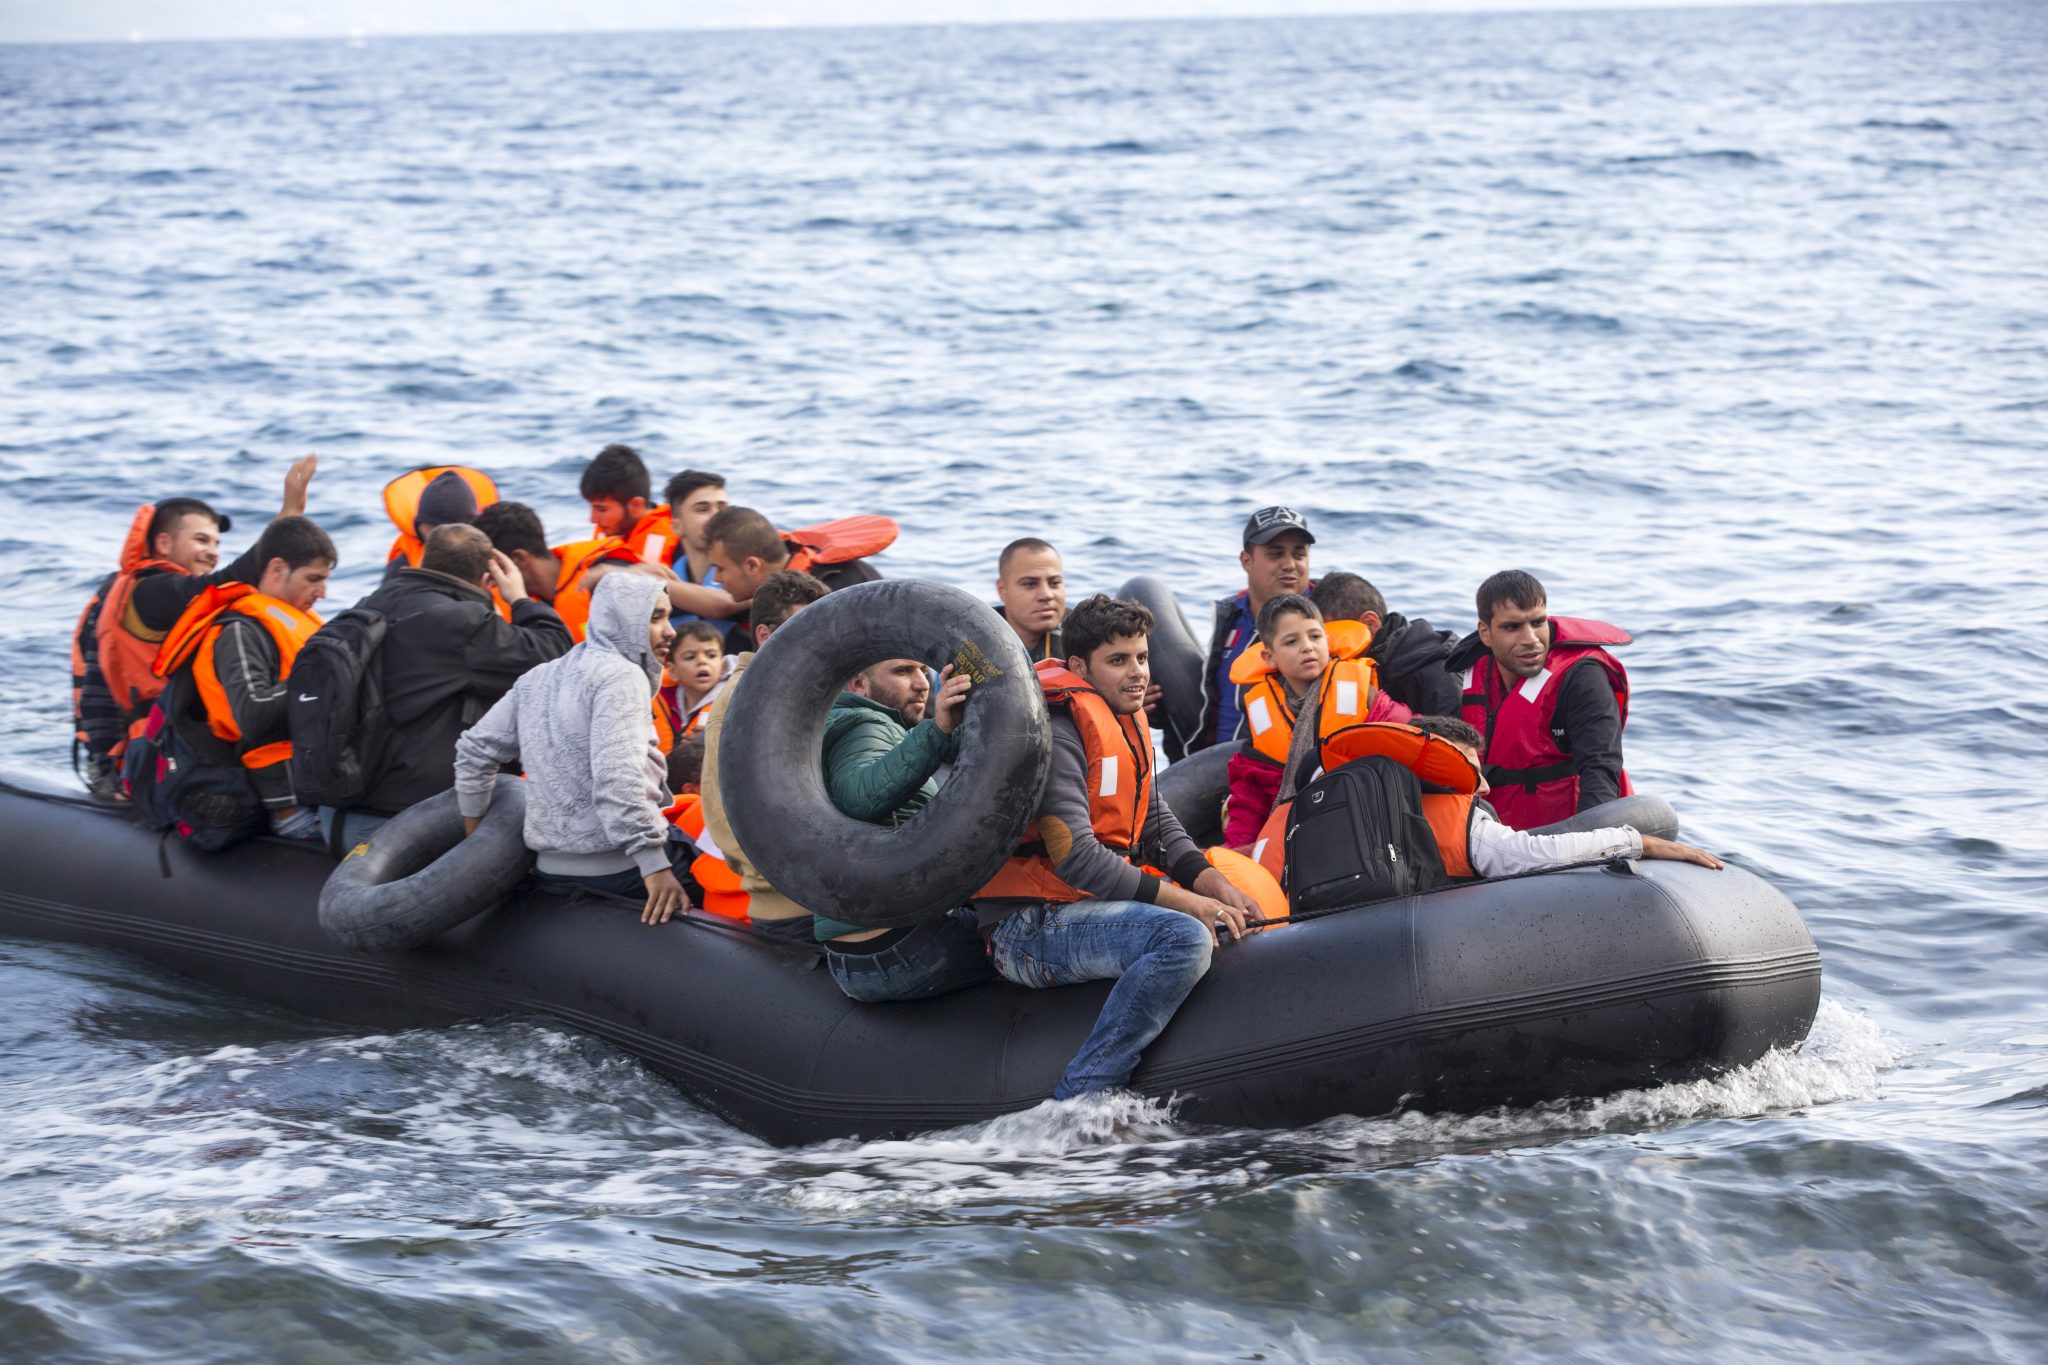 Syrer erreichen Europa: Ein Migrationspakt der EU-Kommission soll die Zuwanderung koordinieren (Archivbild) Foto: picture alliance/Global Warming Images